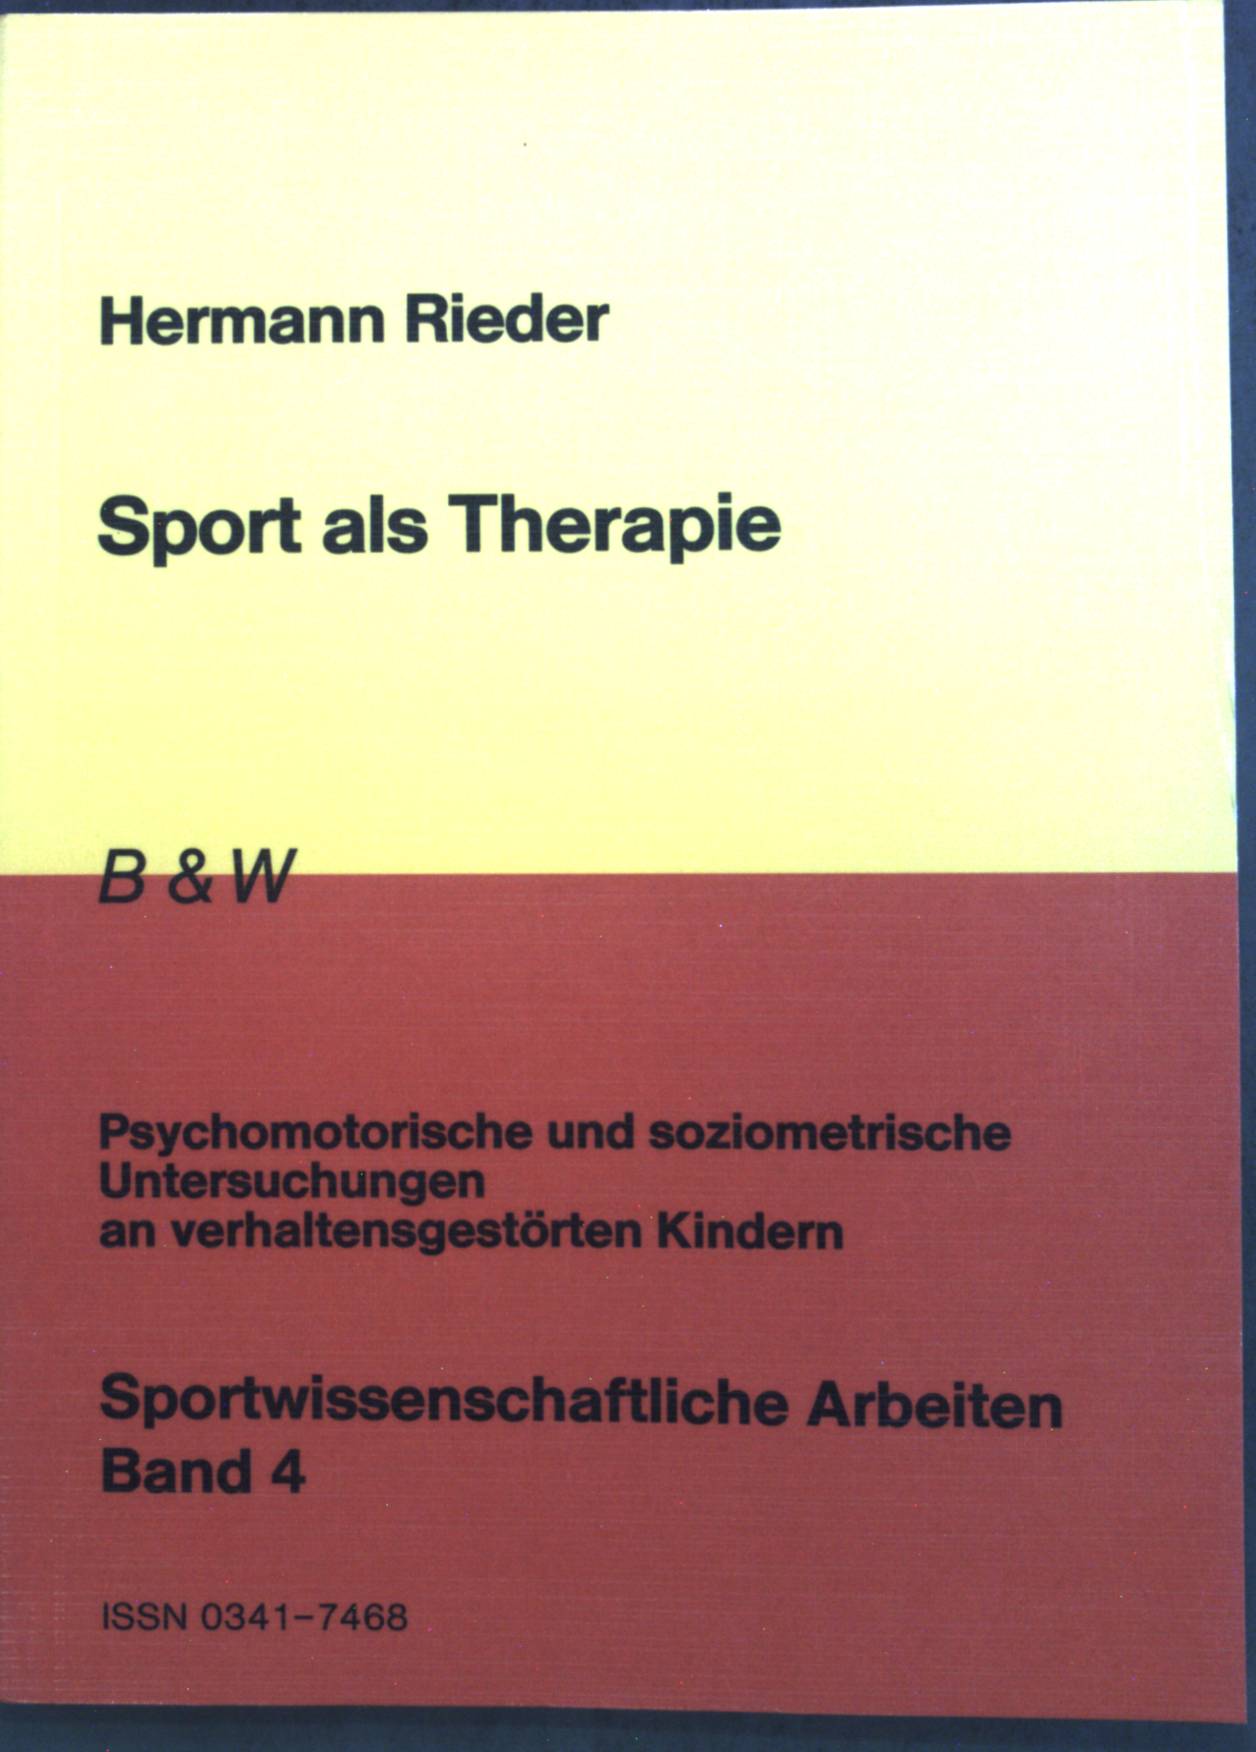 Sport als Therapie : psychomotor. u. soziometr. Unters. an verhaltensgestörten Kindern. Sportwissenschaftliche Arbeiten ; Bd. 4 2., überarb. Aufl. - Rieder, Hermann